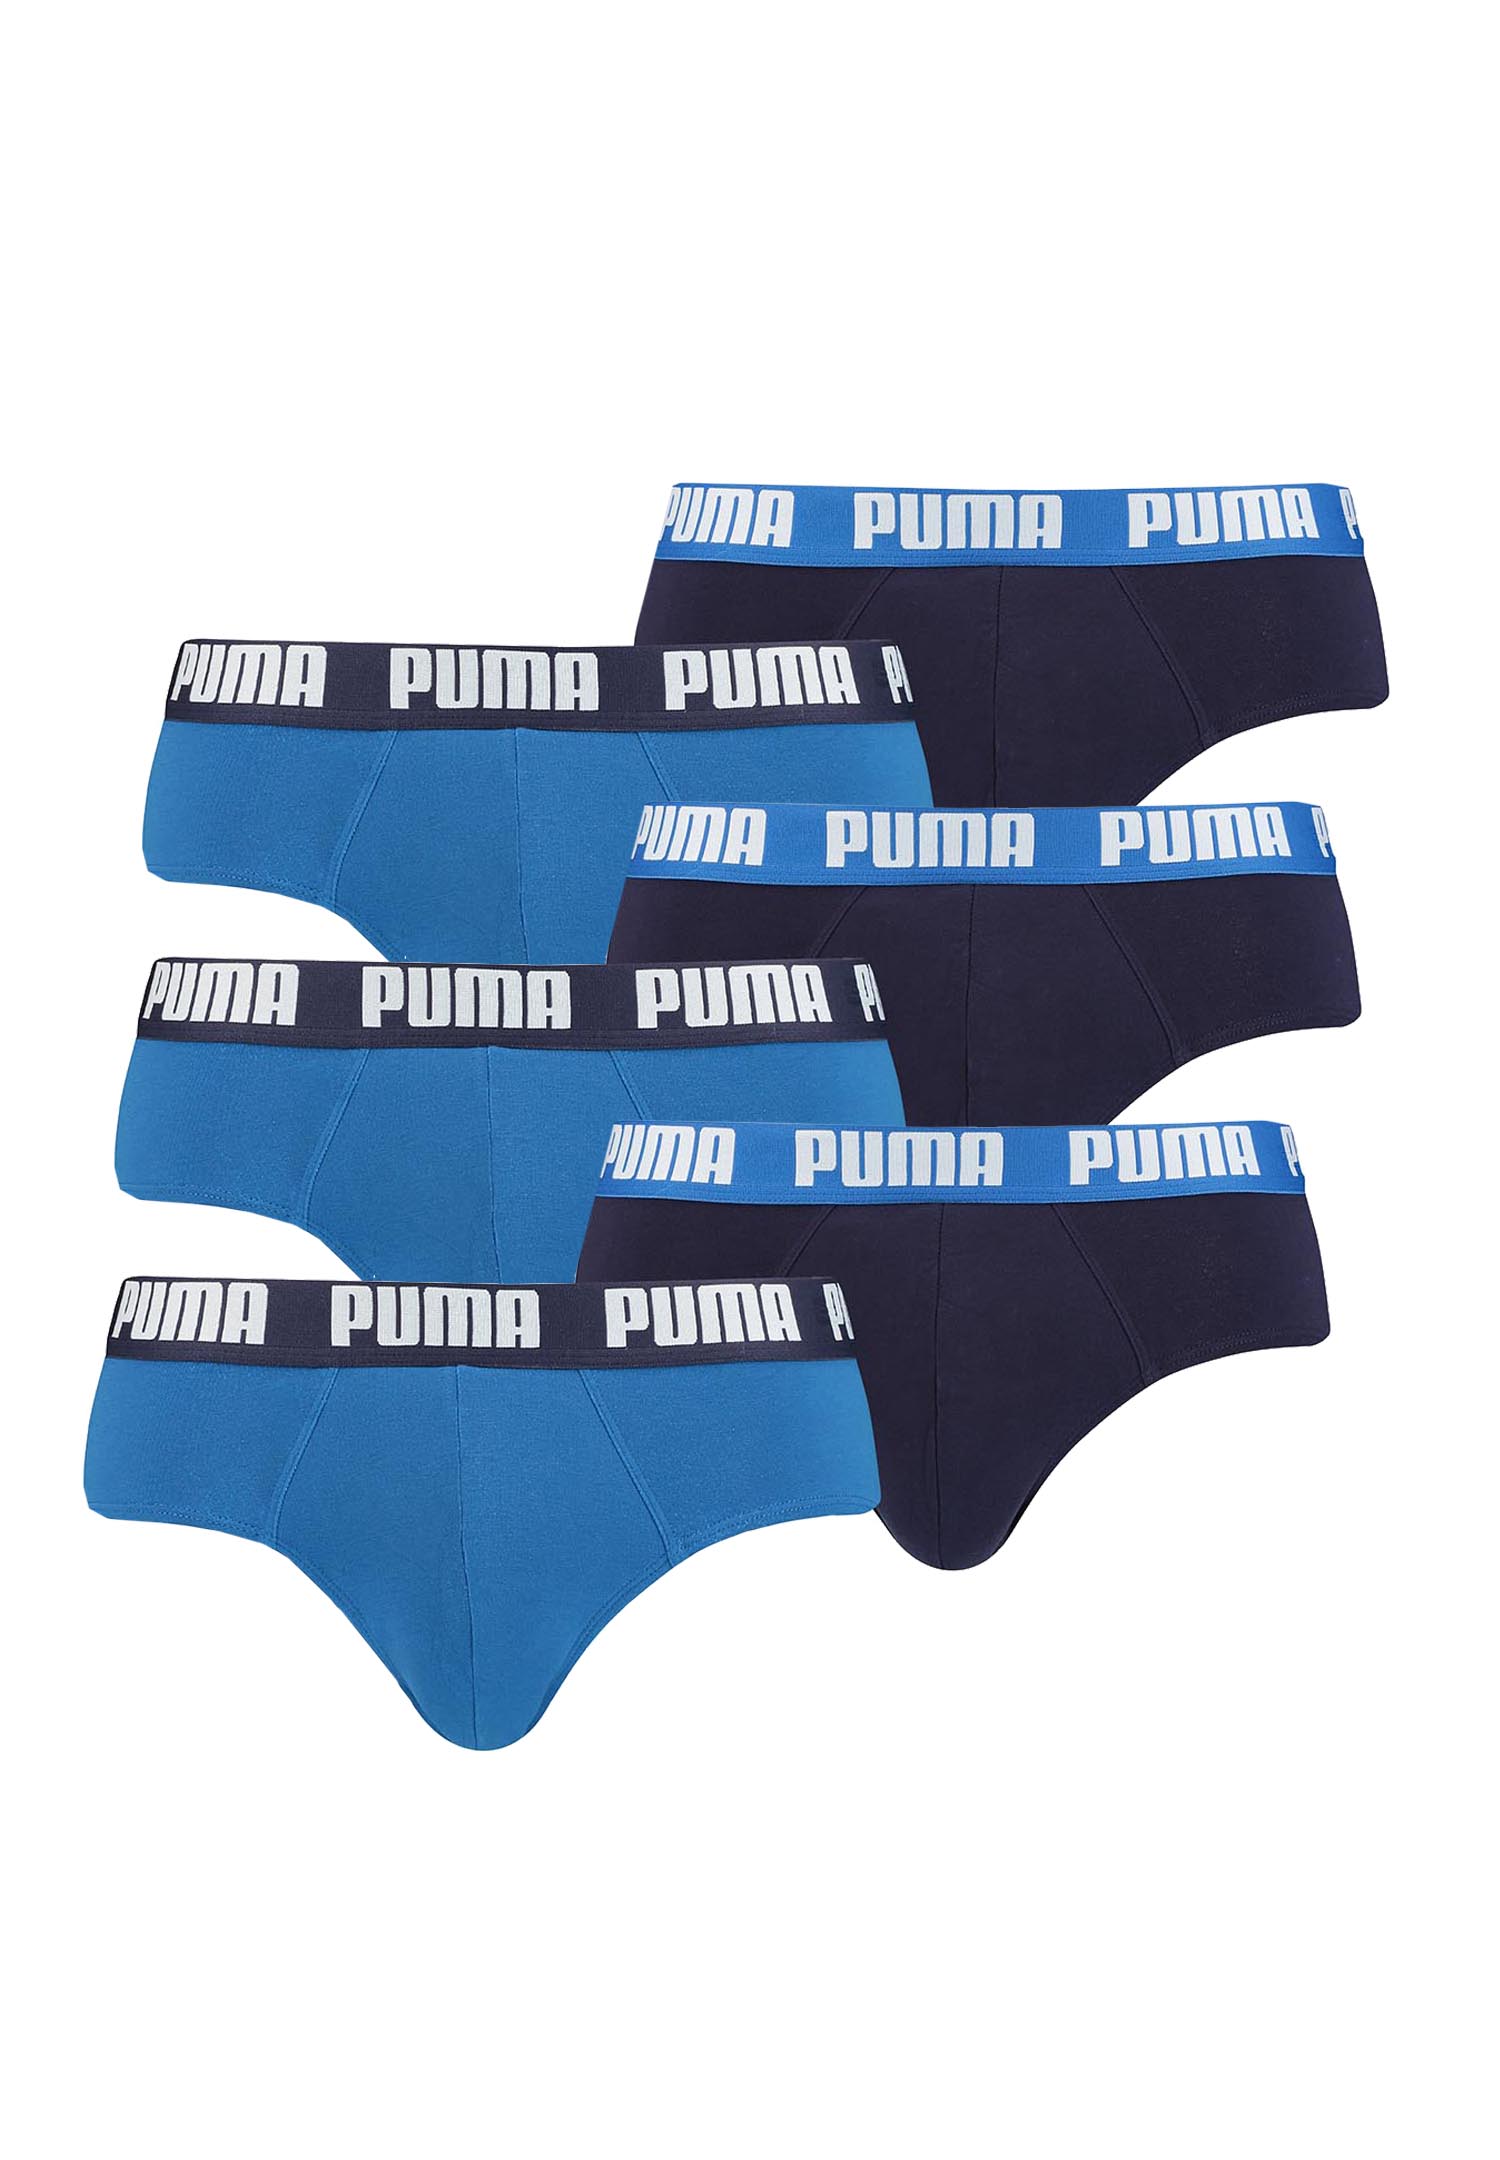 Puma Basic Brief Men Herren Unterhose Pant Unterwäsche 6er Pack